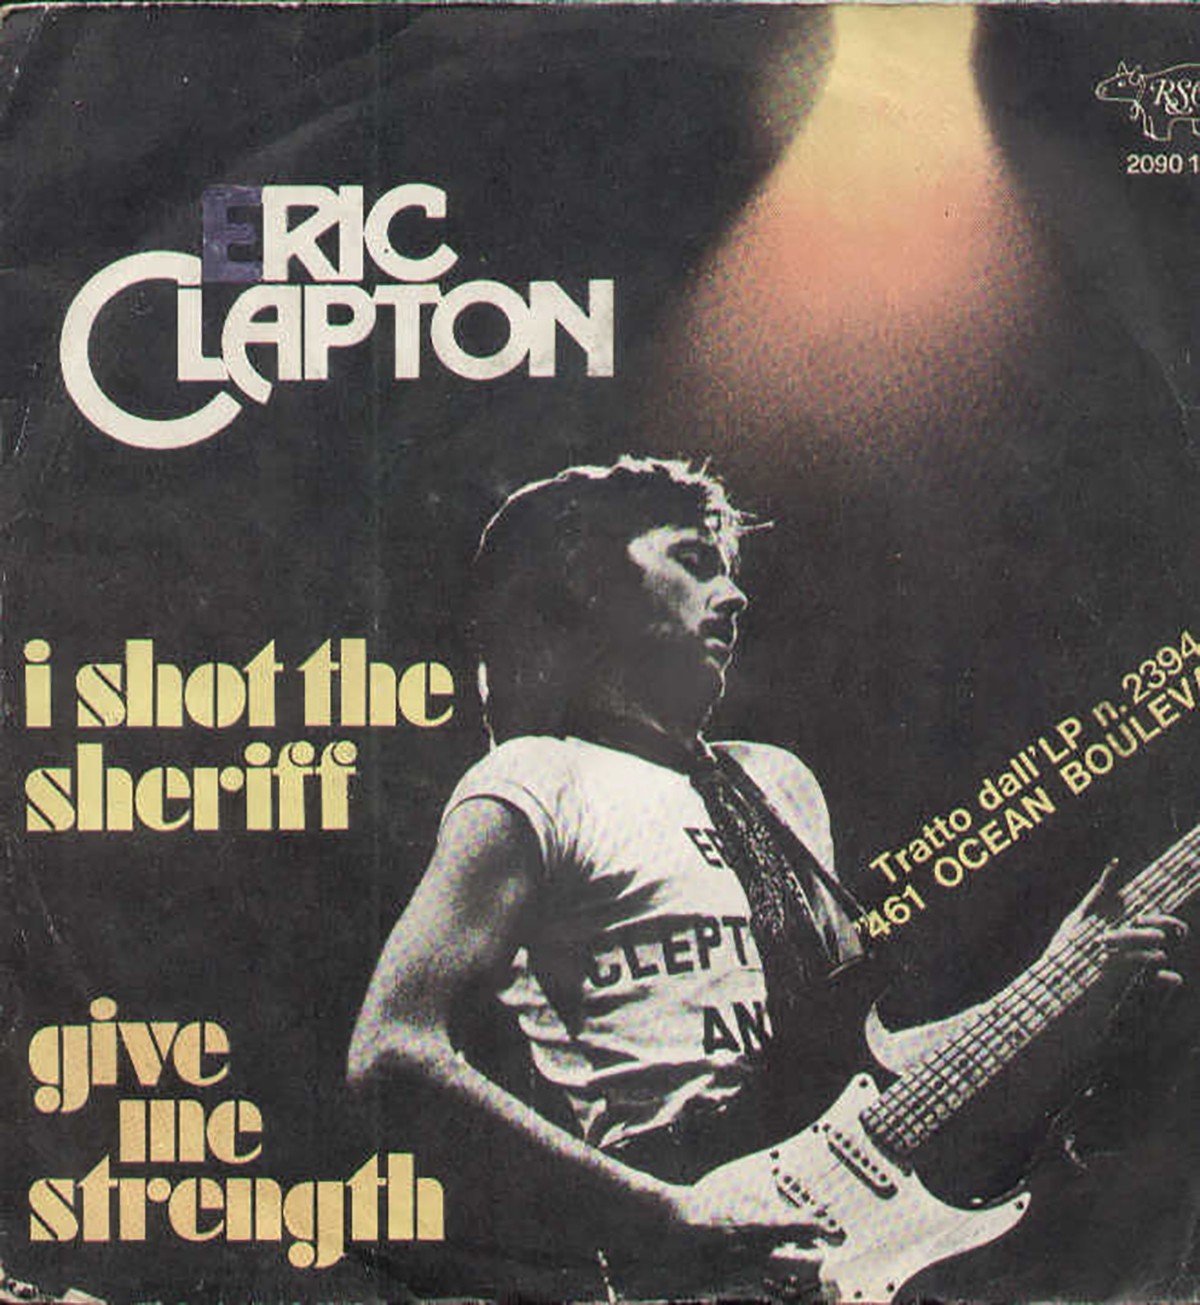 Eric Clapton – I shot the sheriff